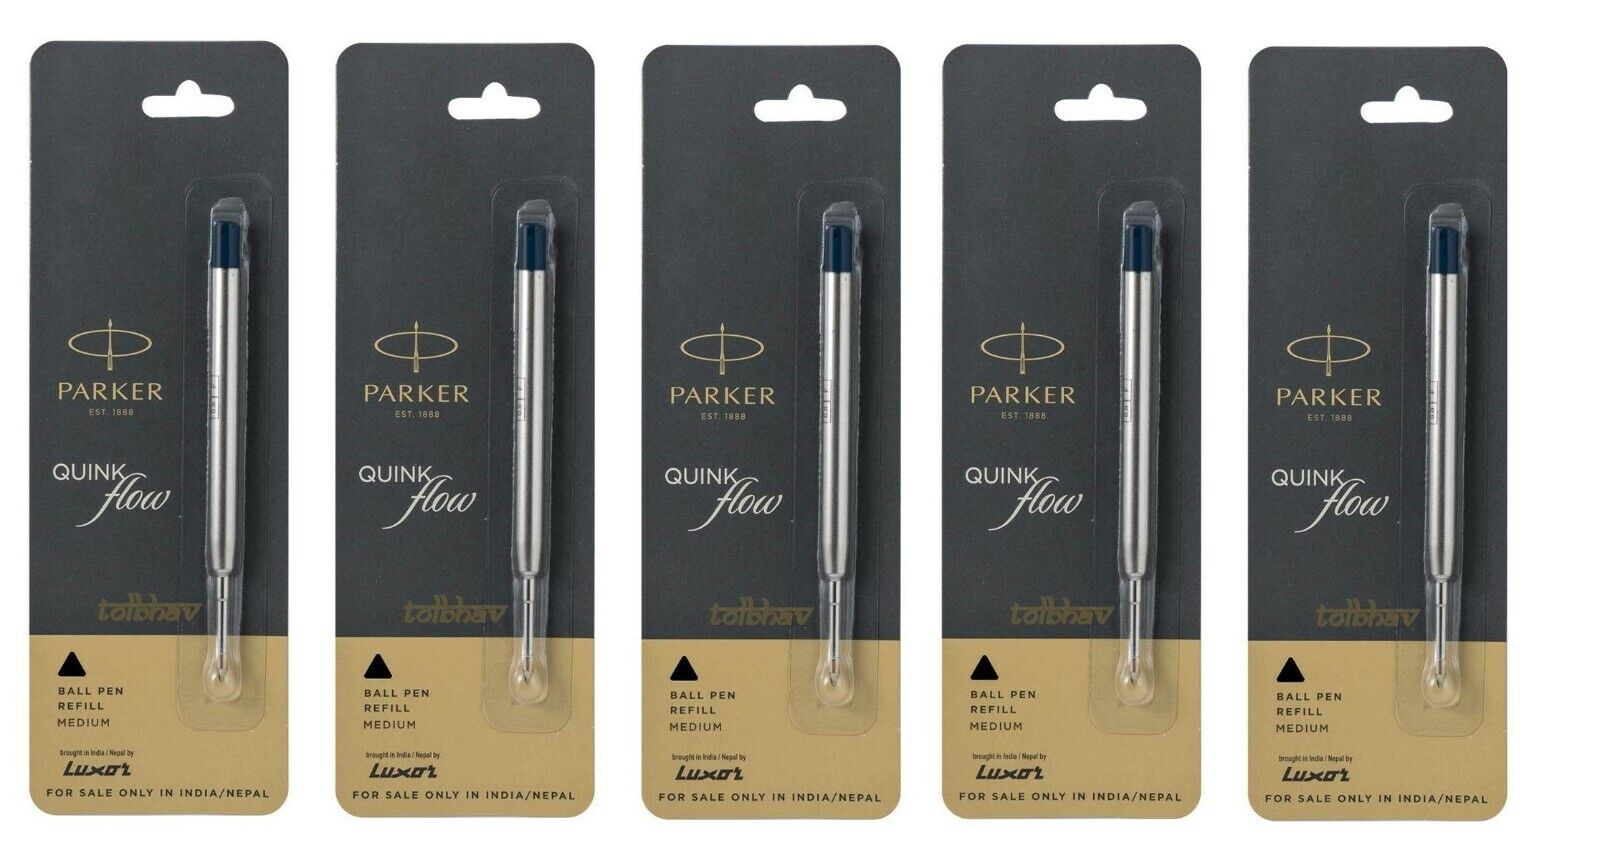 5 X Parker Quink Flow Ball Point Pen BP Refill Refills Black Ink Medium Nib New PARKER 9000017713 - фотография #2